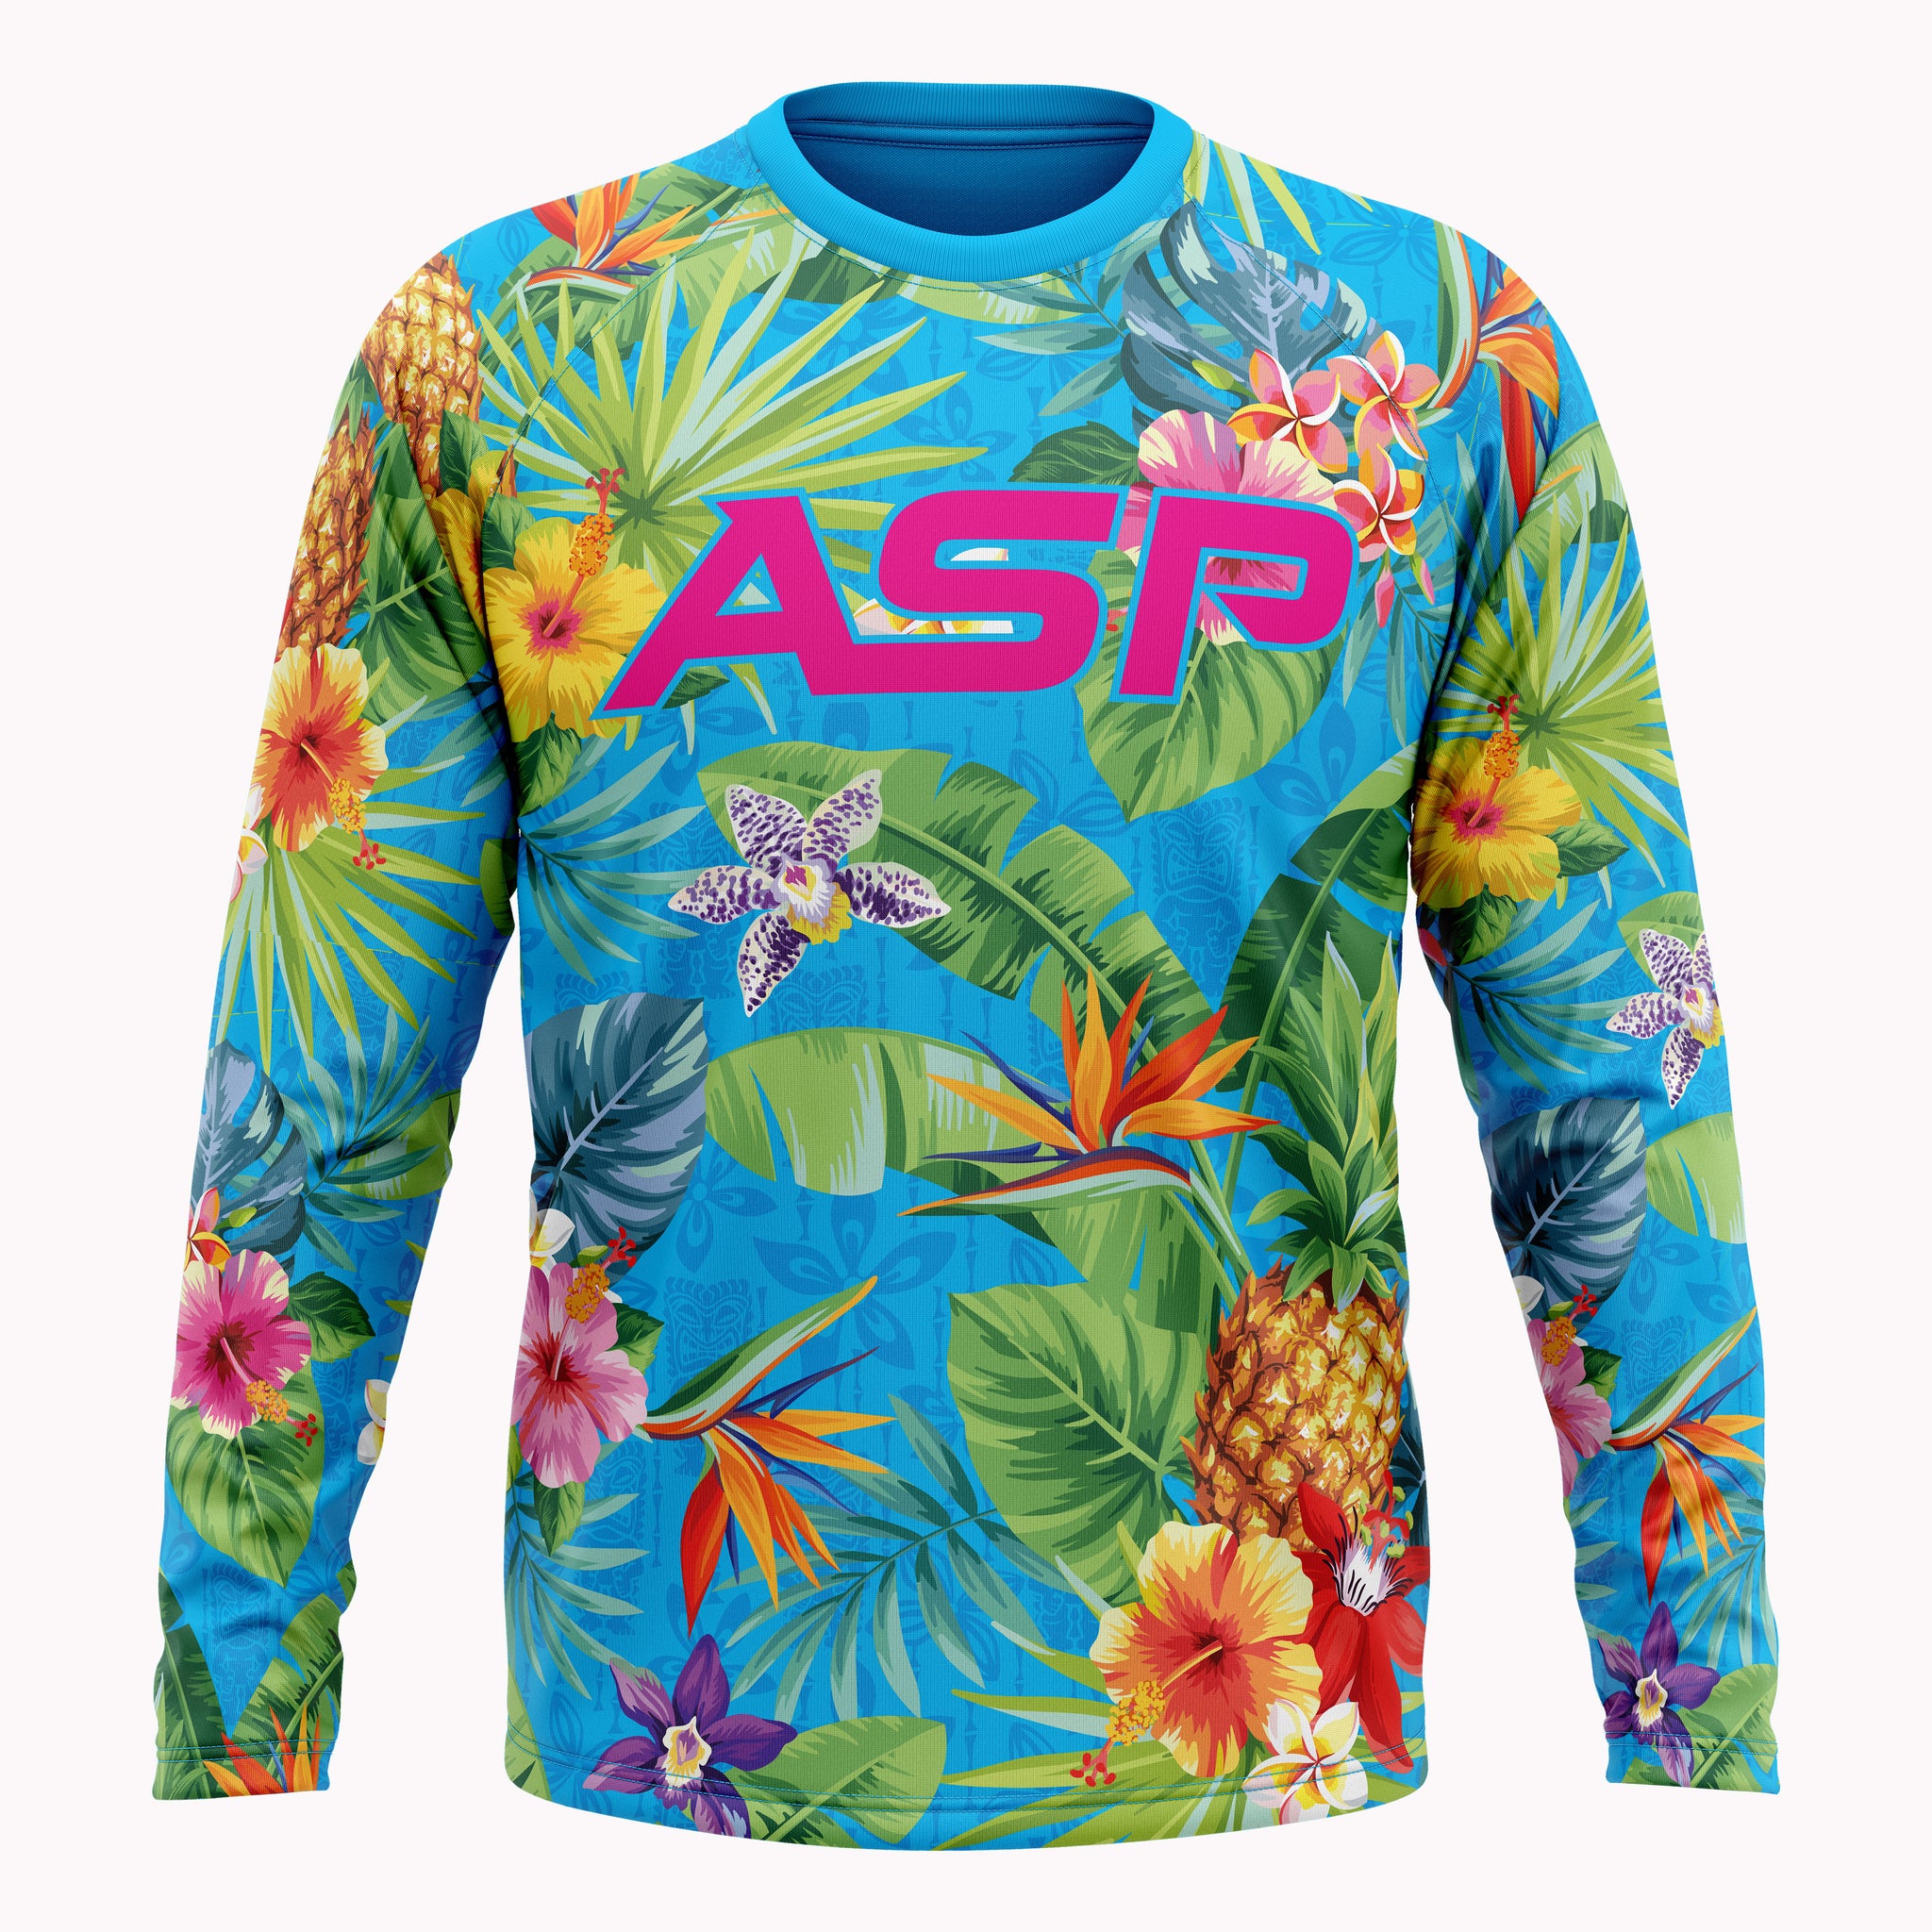 ASP Maui Long Sleeve